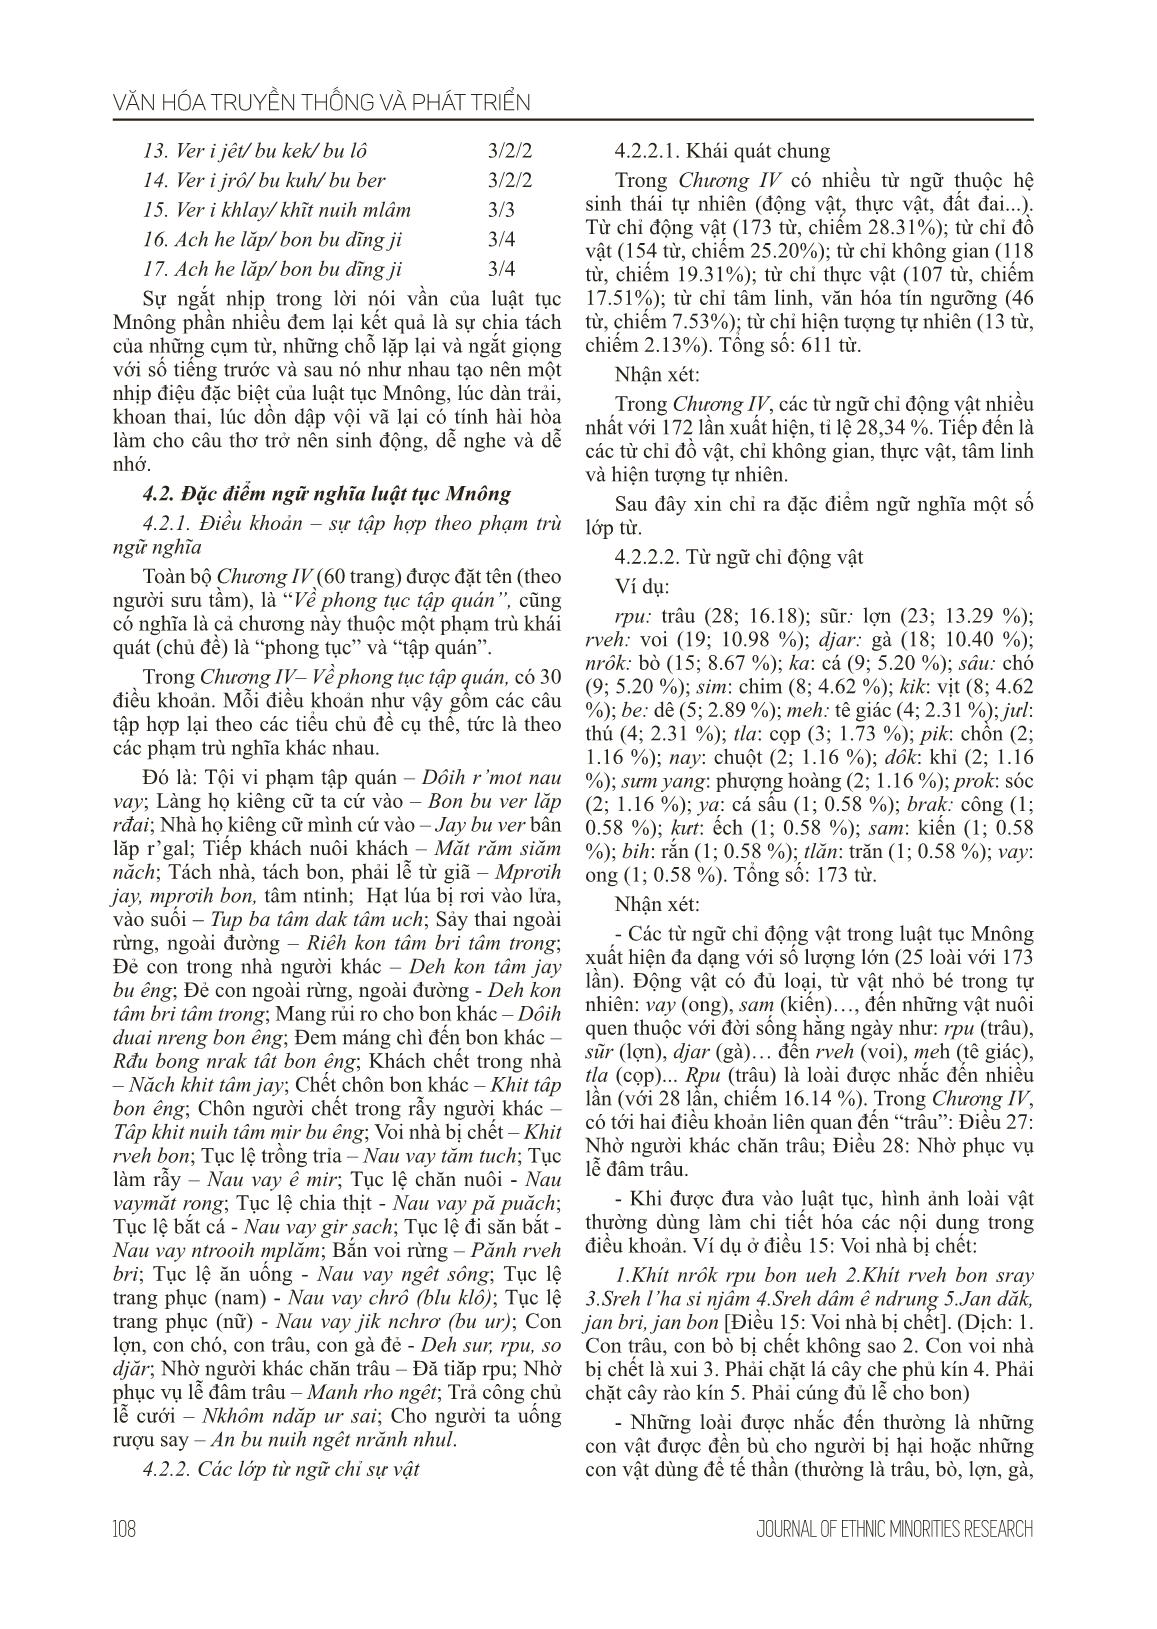 Đặc điểm ngôn ngữ trong luật tục Mnông (Nghiên cứu trường hợp: chương IV - Về phong tục tập quán) trang 5